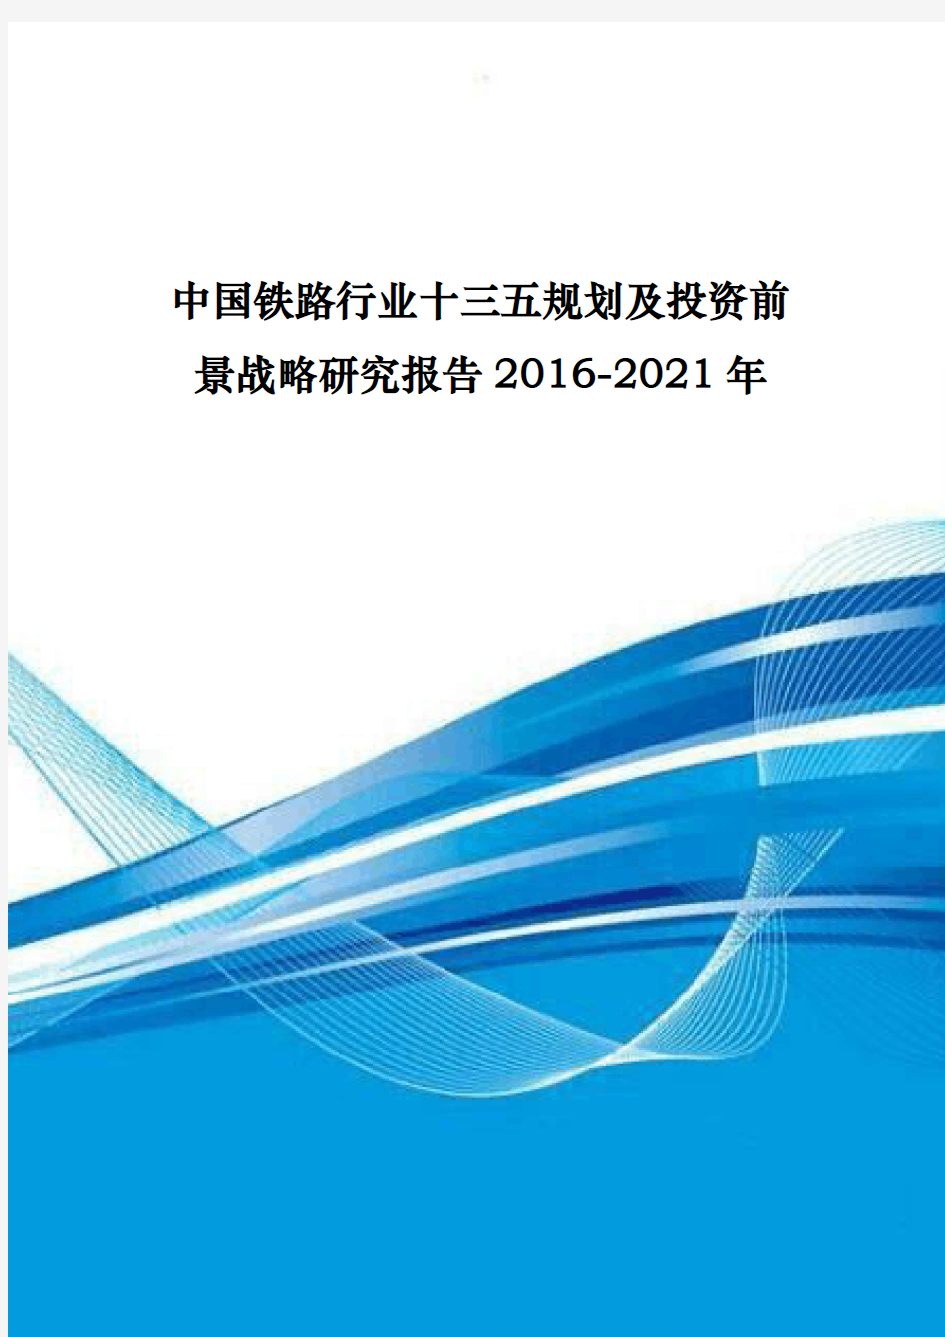 中国铁路行业十三五规划与投资前景战略研究报告xx_20